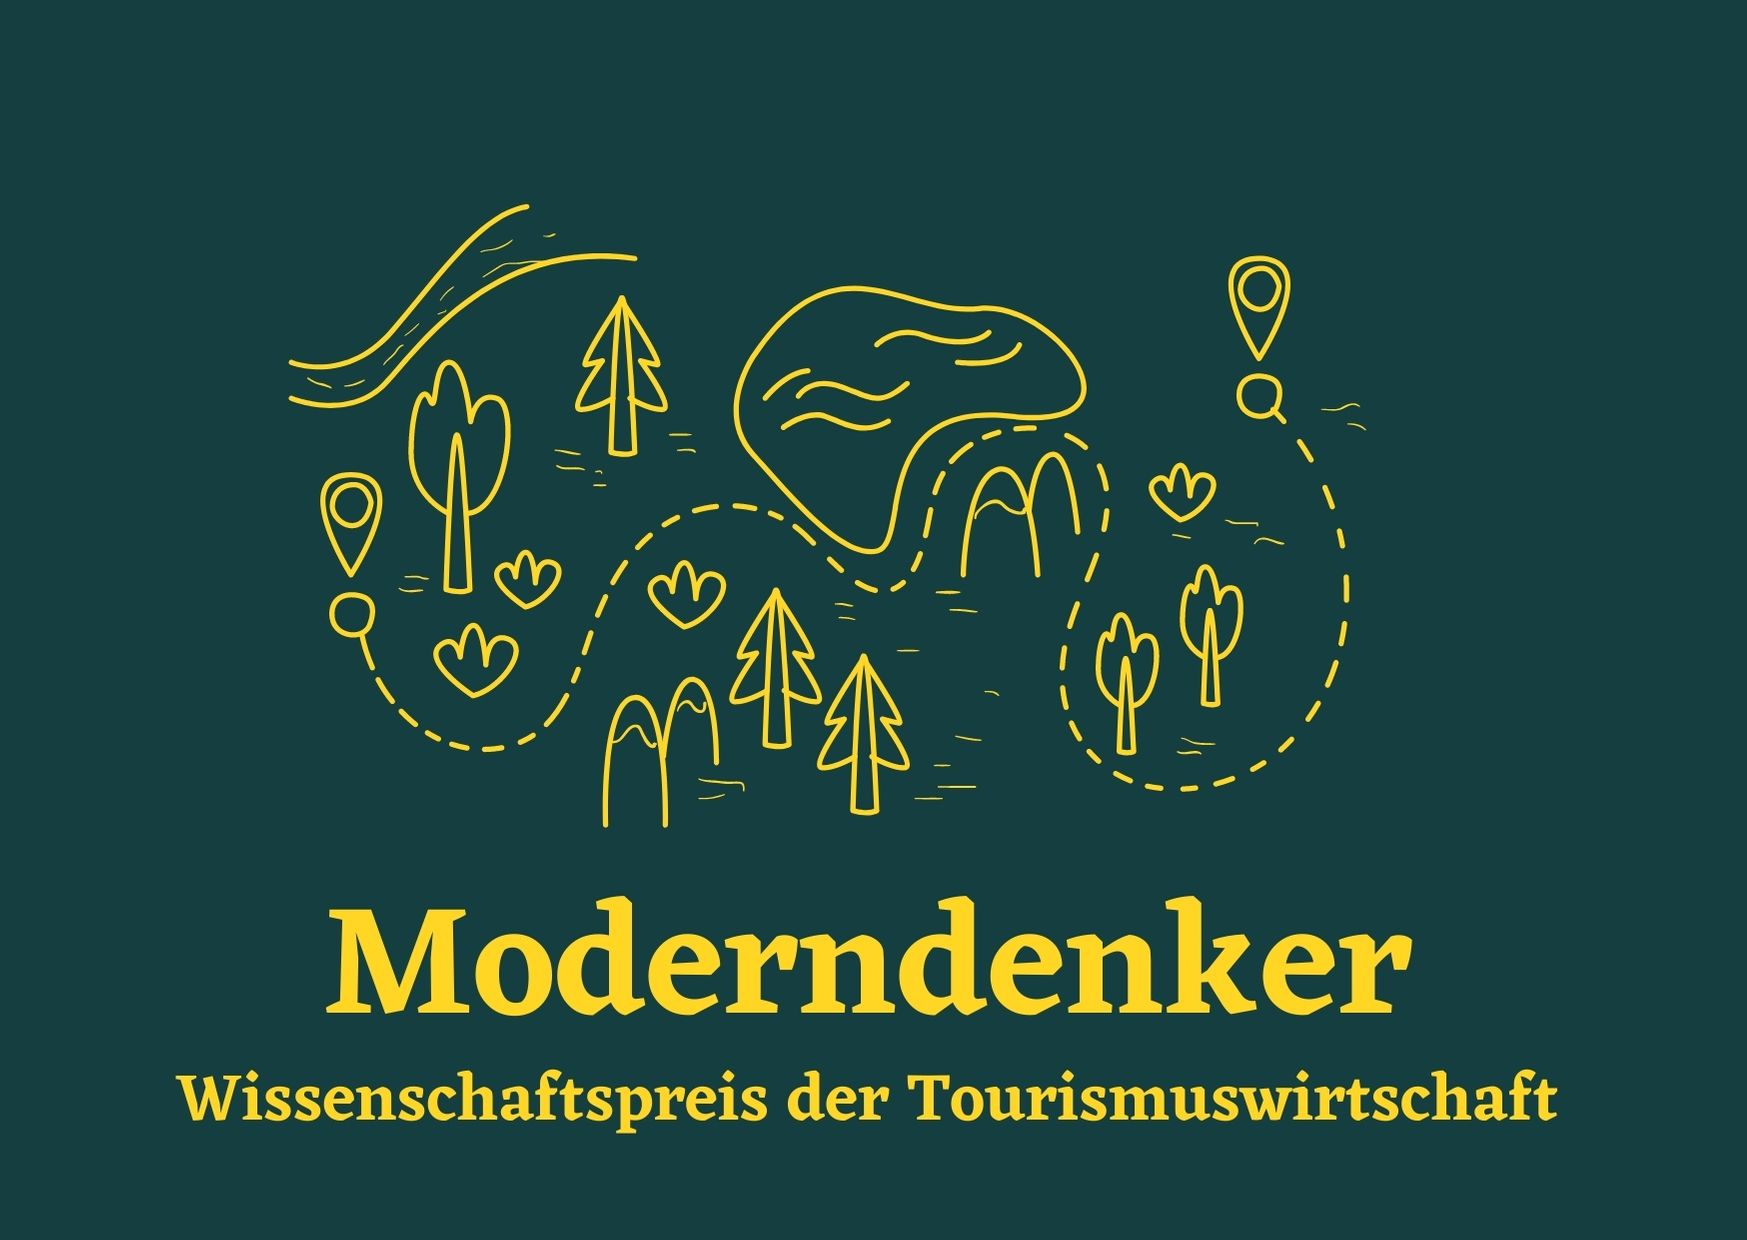 Moderndenker Logo ©LTV